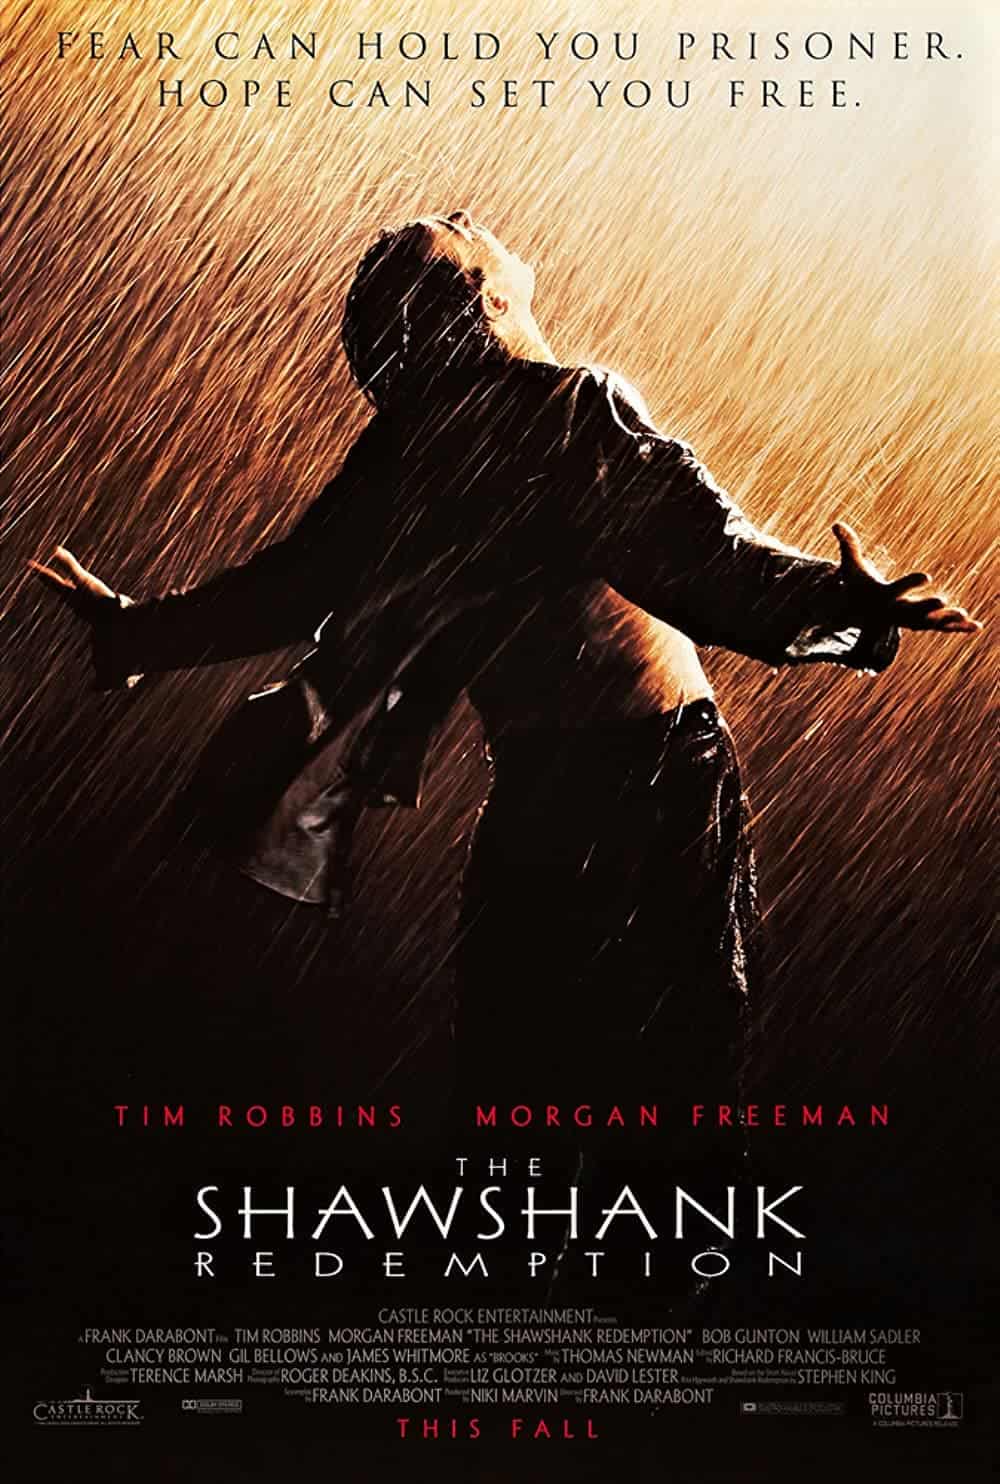 The Shawshank Redemption (1994) 17 Best Prison Escape Movies to Add in Your Watchlist